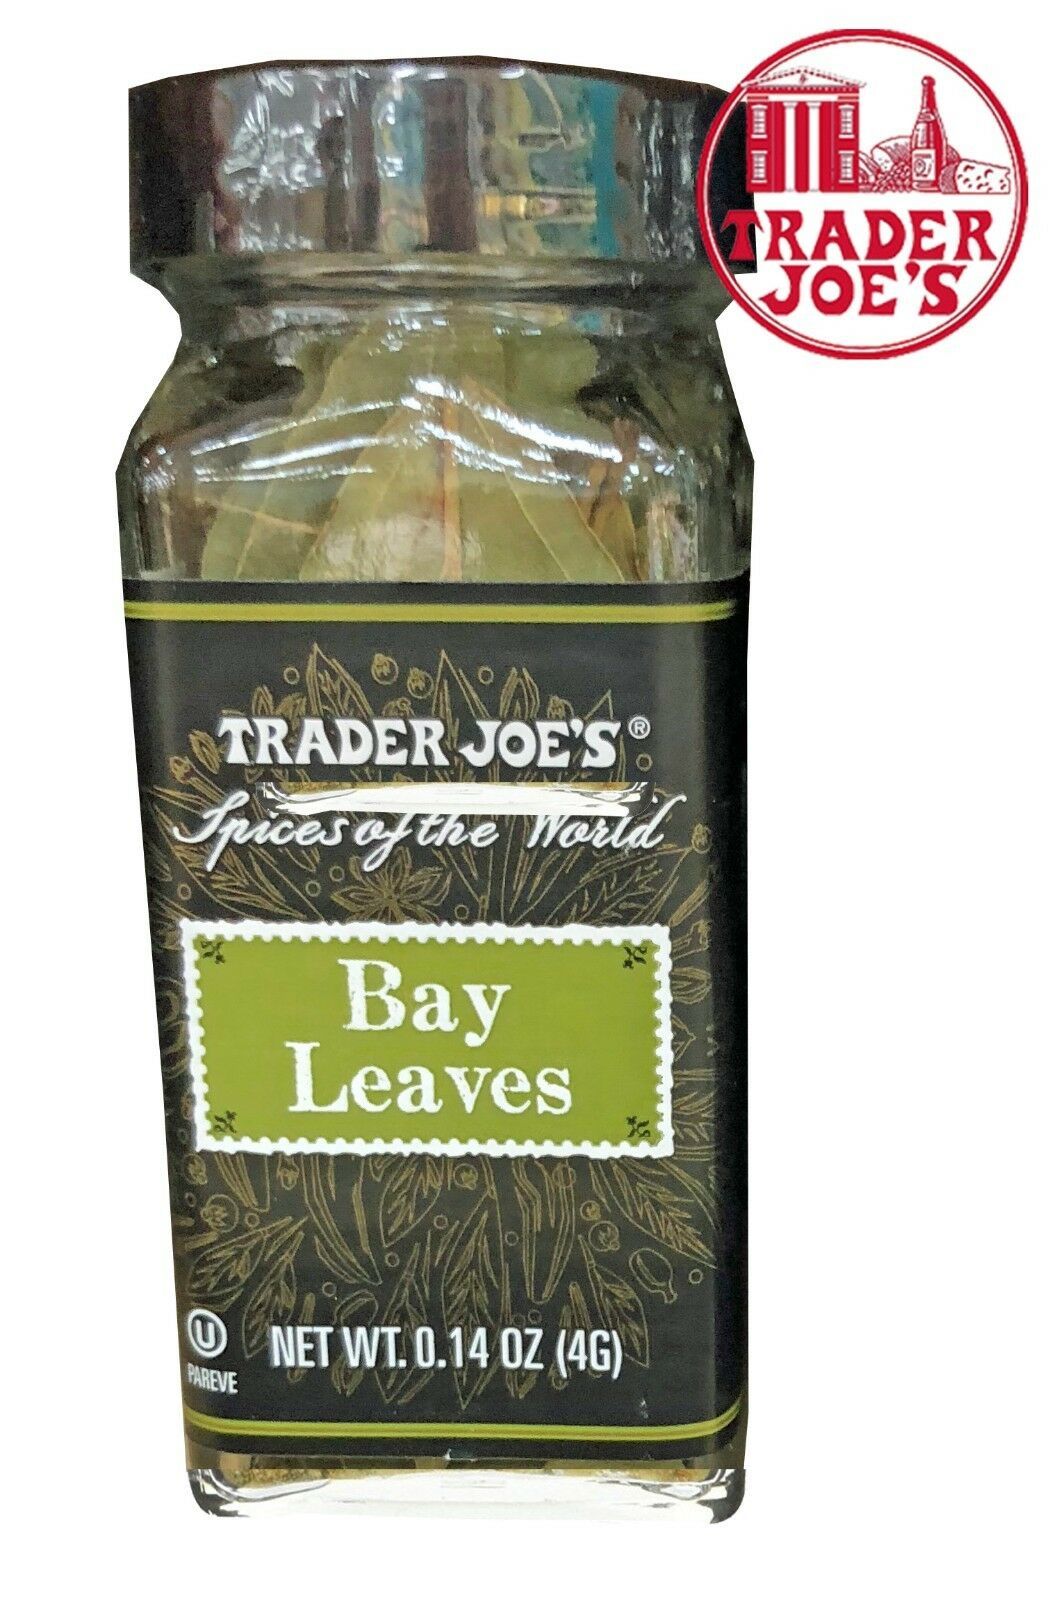 3 Pack  Trader Joe's Seasoning In A Pickle Seasoning Blend, 2.3 oz 